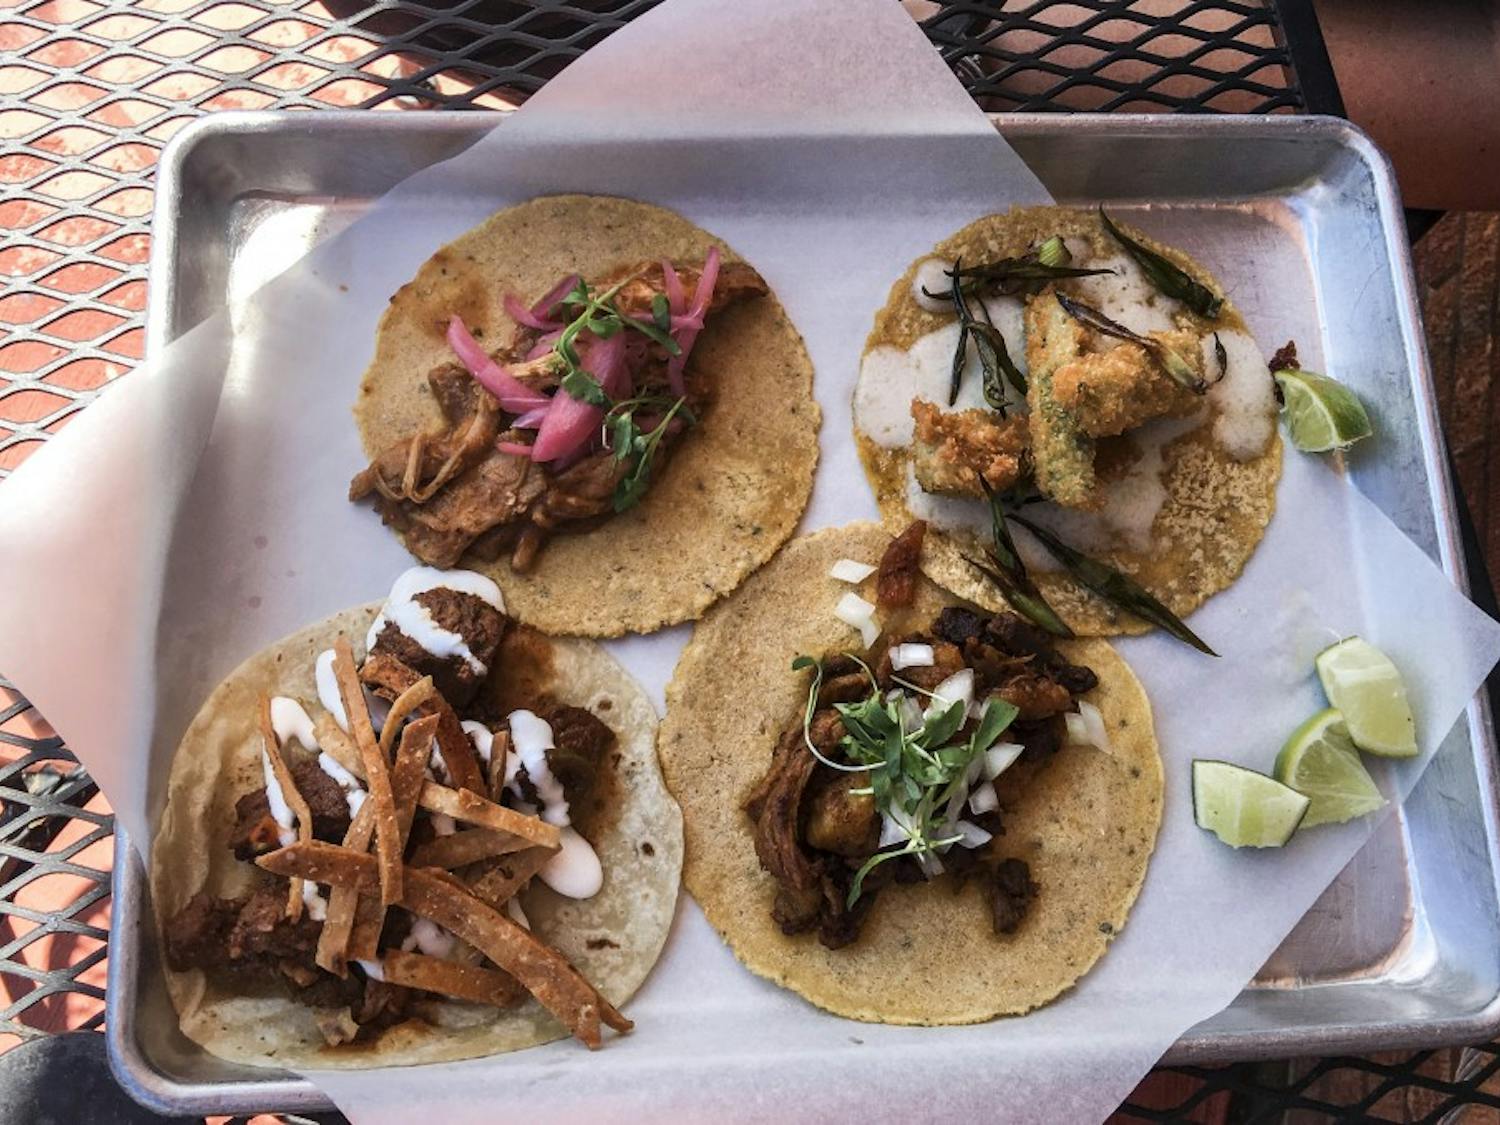 El Cotorro Shrimp, Carne Asada, Carnitas, Nopales, and Al Pastor tacos, taken on June 15, 2018.